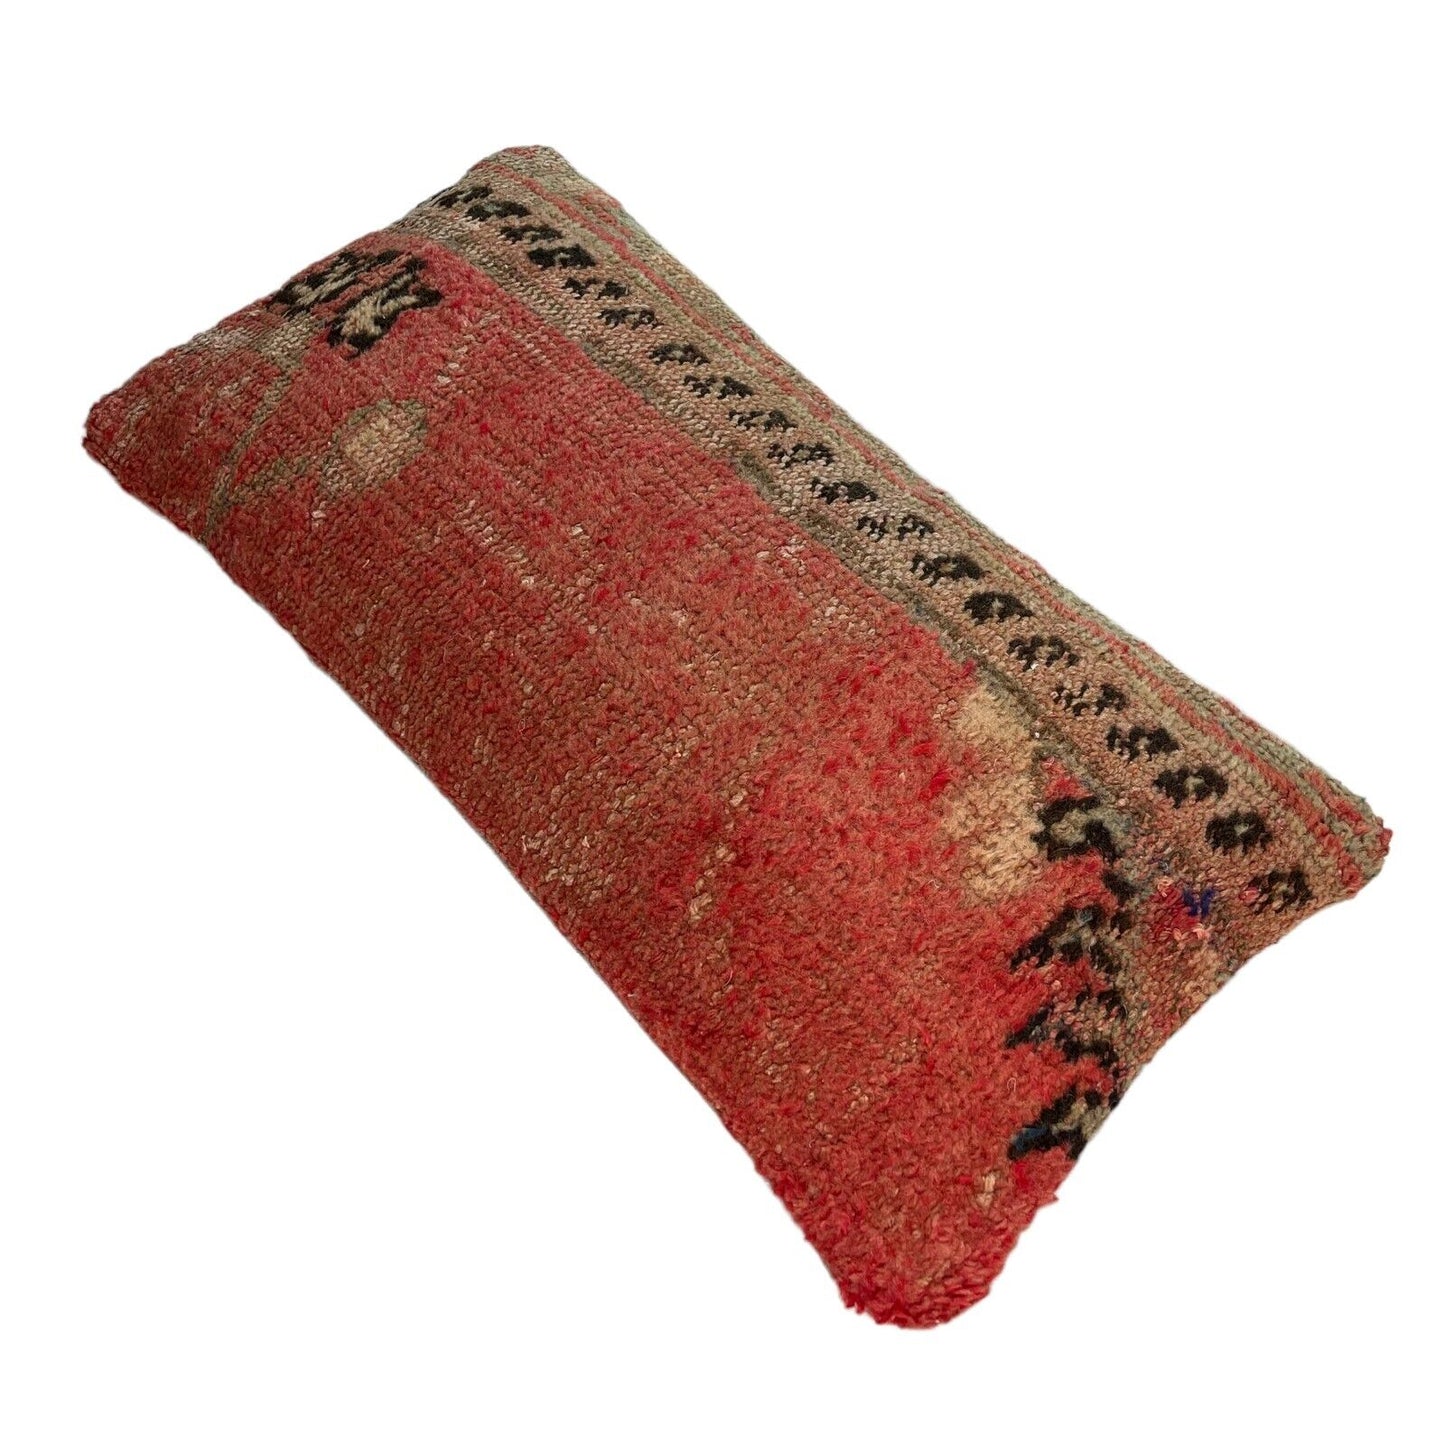 30x60 cm Vintage Türkisch Kissenbezug , Vintage Turkish Cushion Cover LL1511